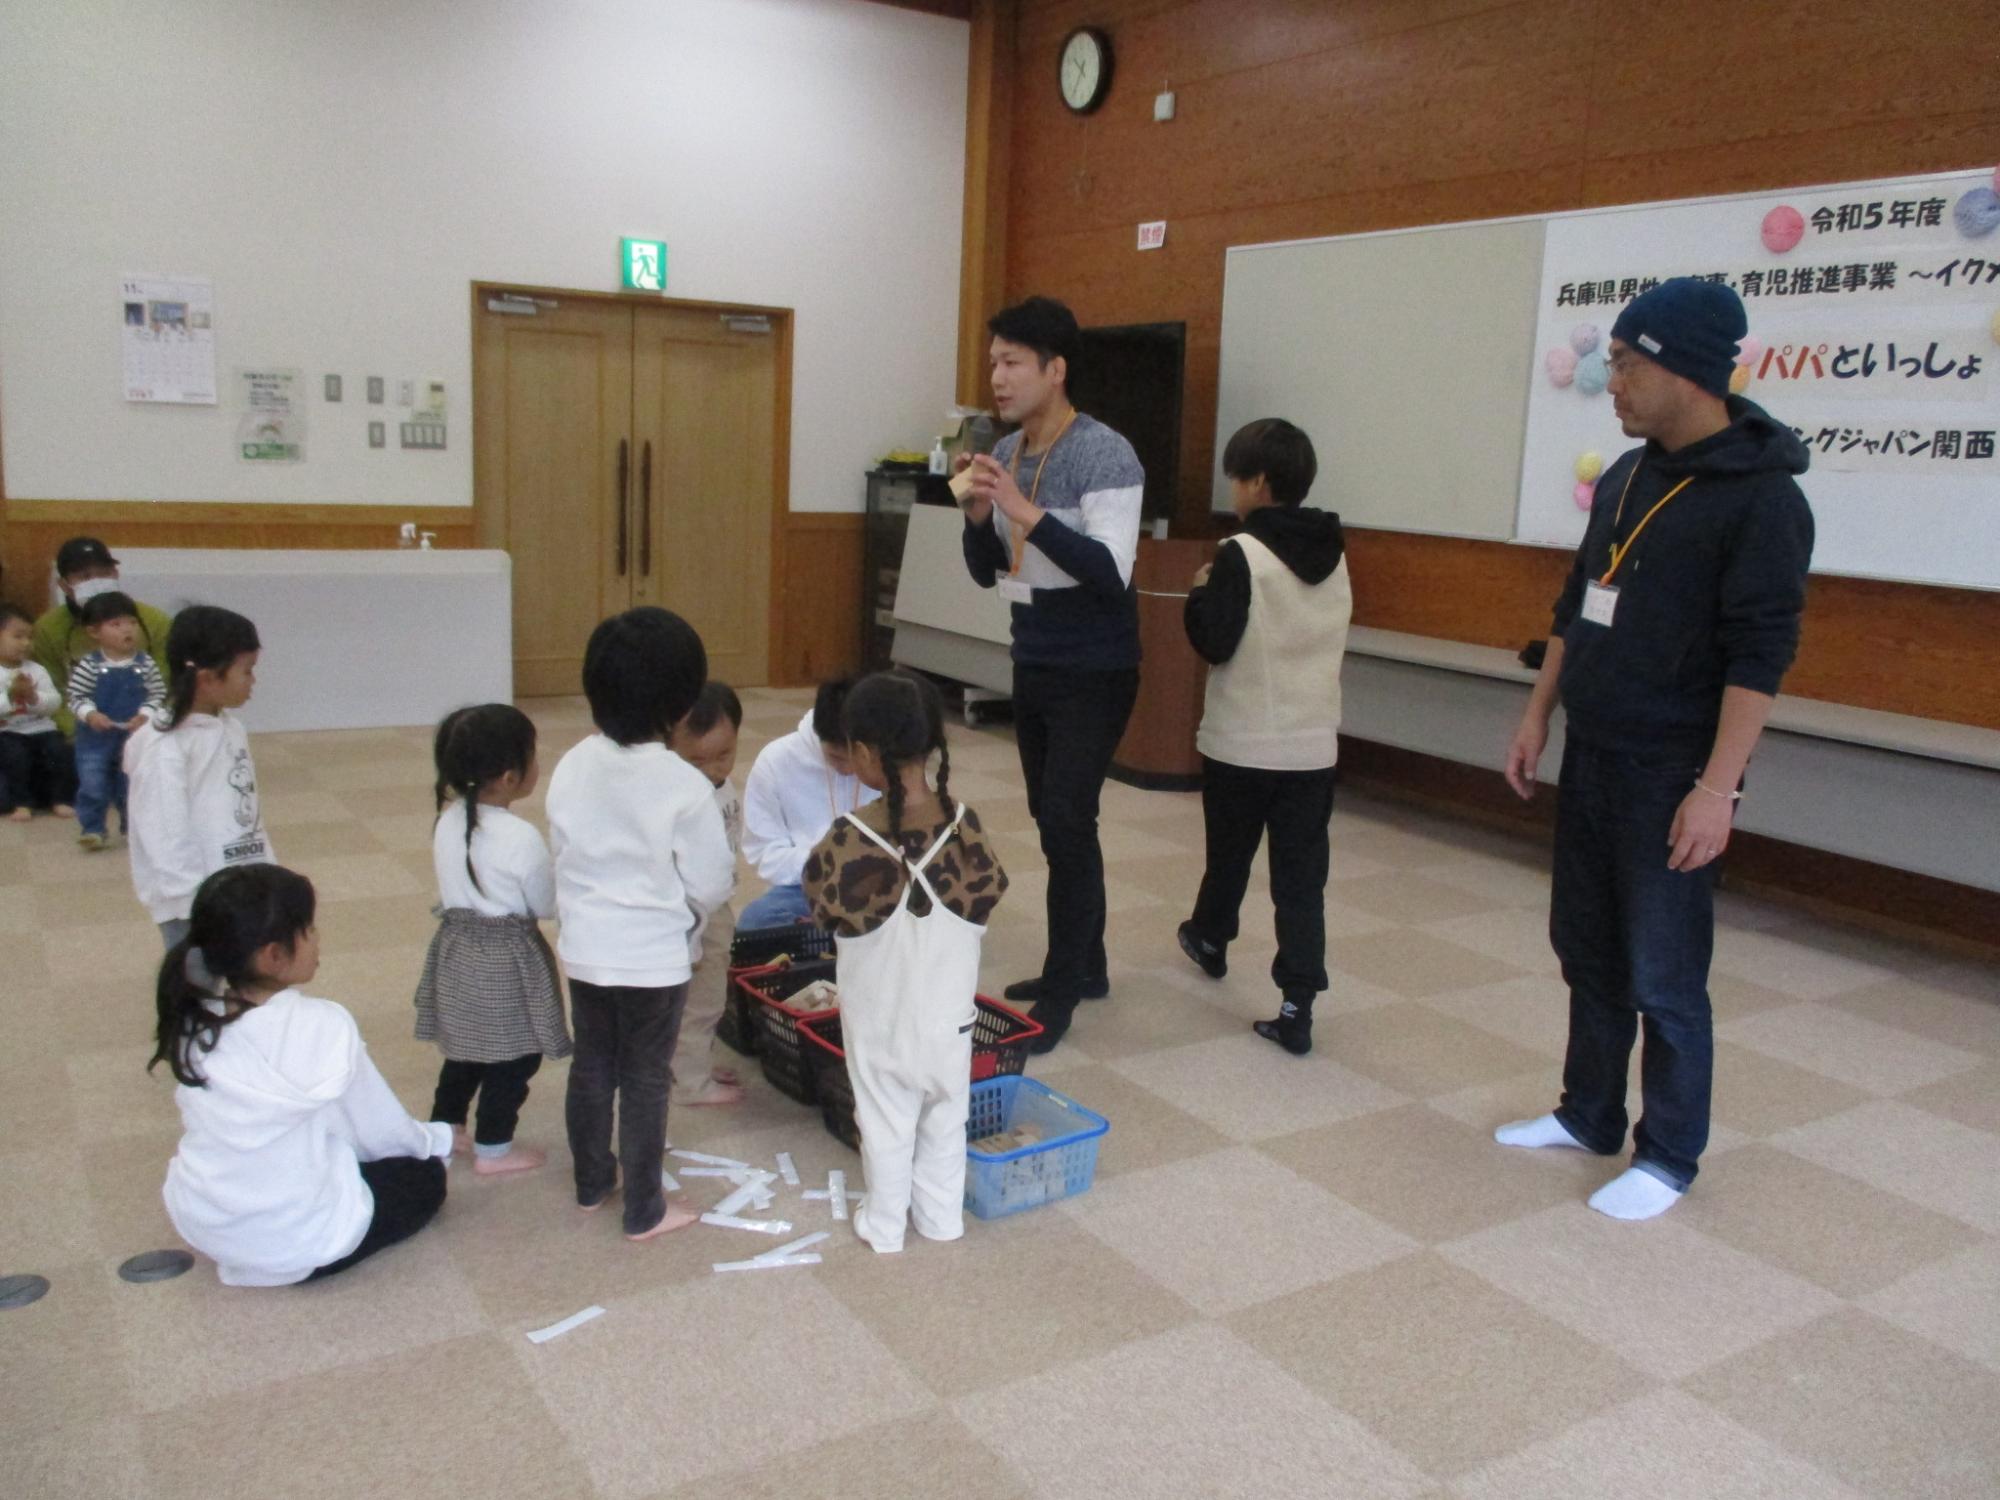 講師の森田省吾さんと近澤武生さん遊びの説明をしている写真